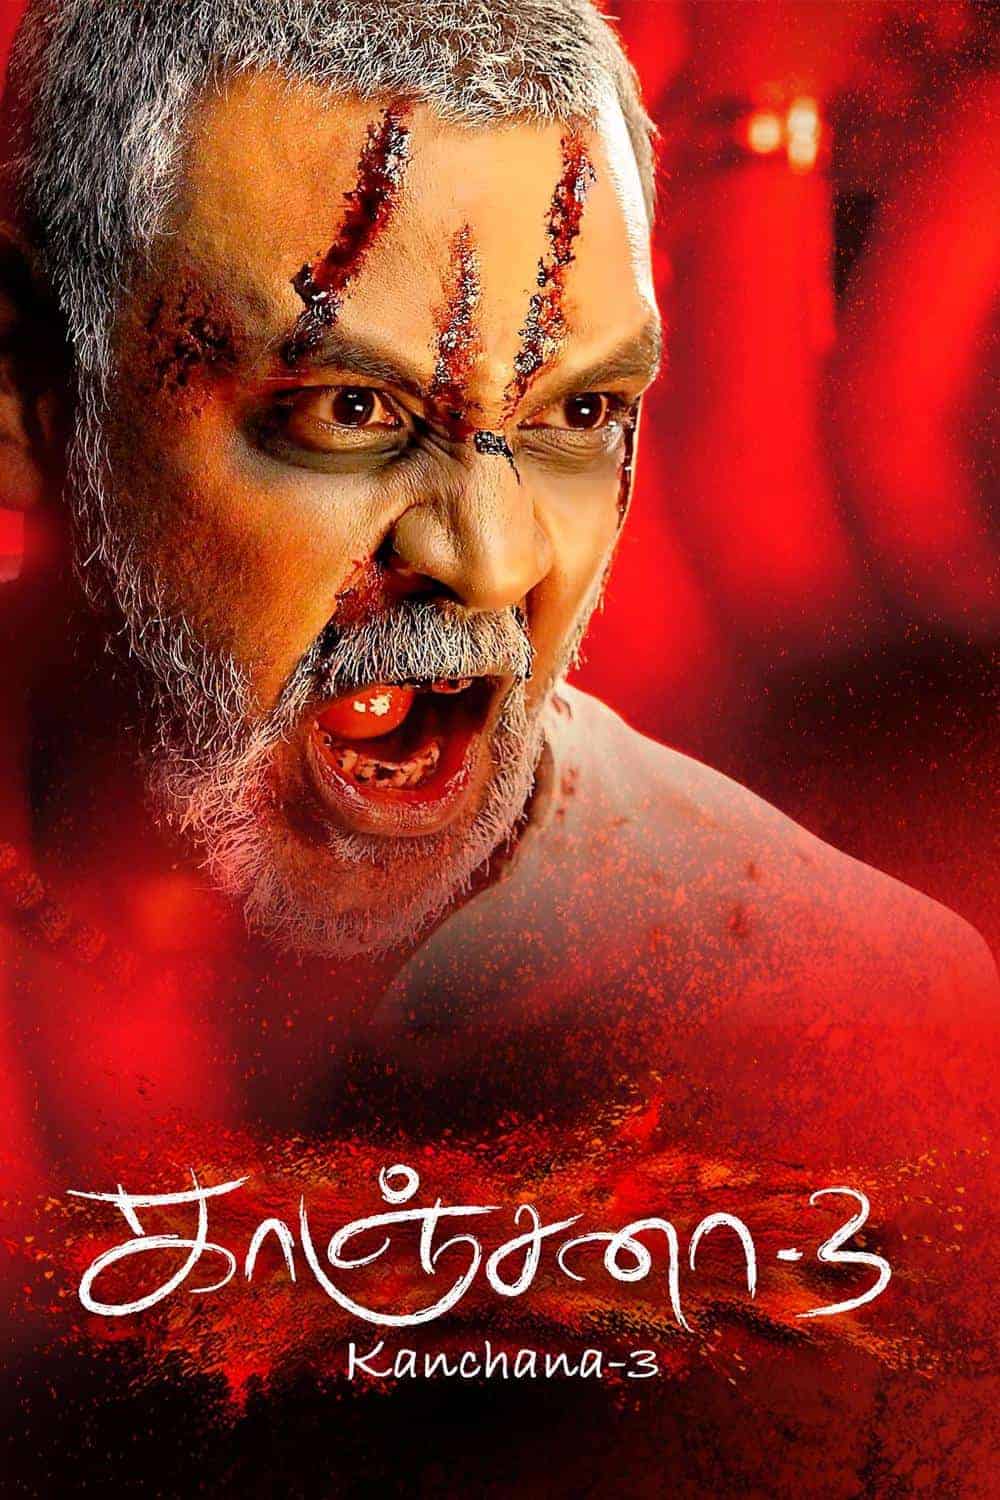 Kanchana 3 2019 Tamil Horror Movie Online